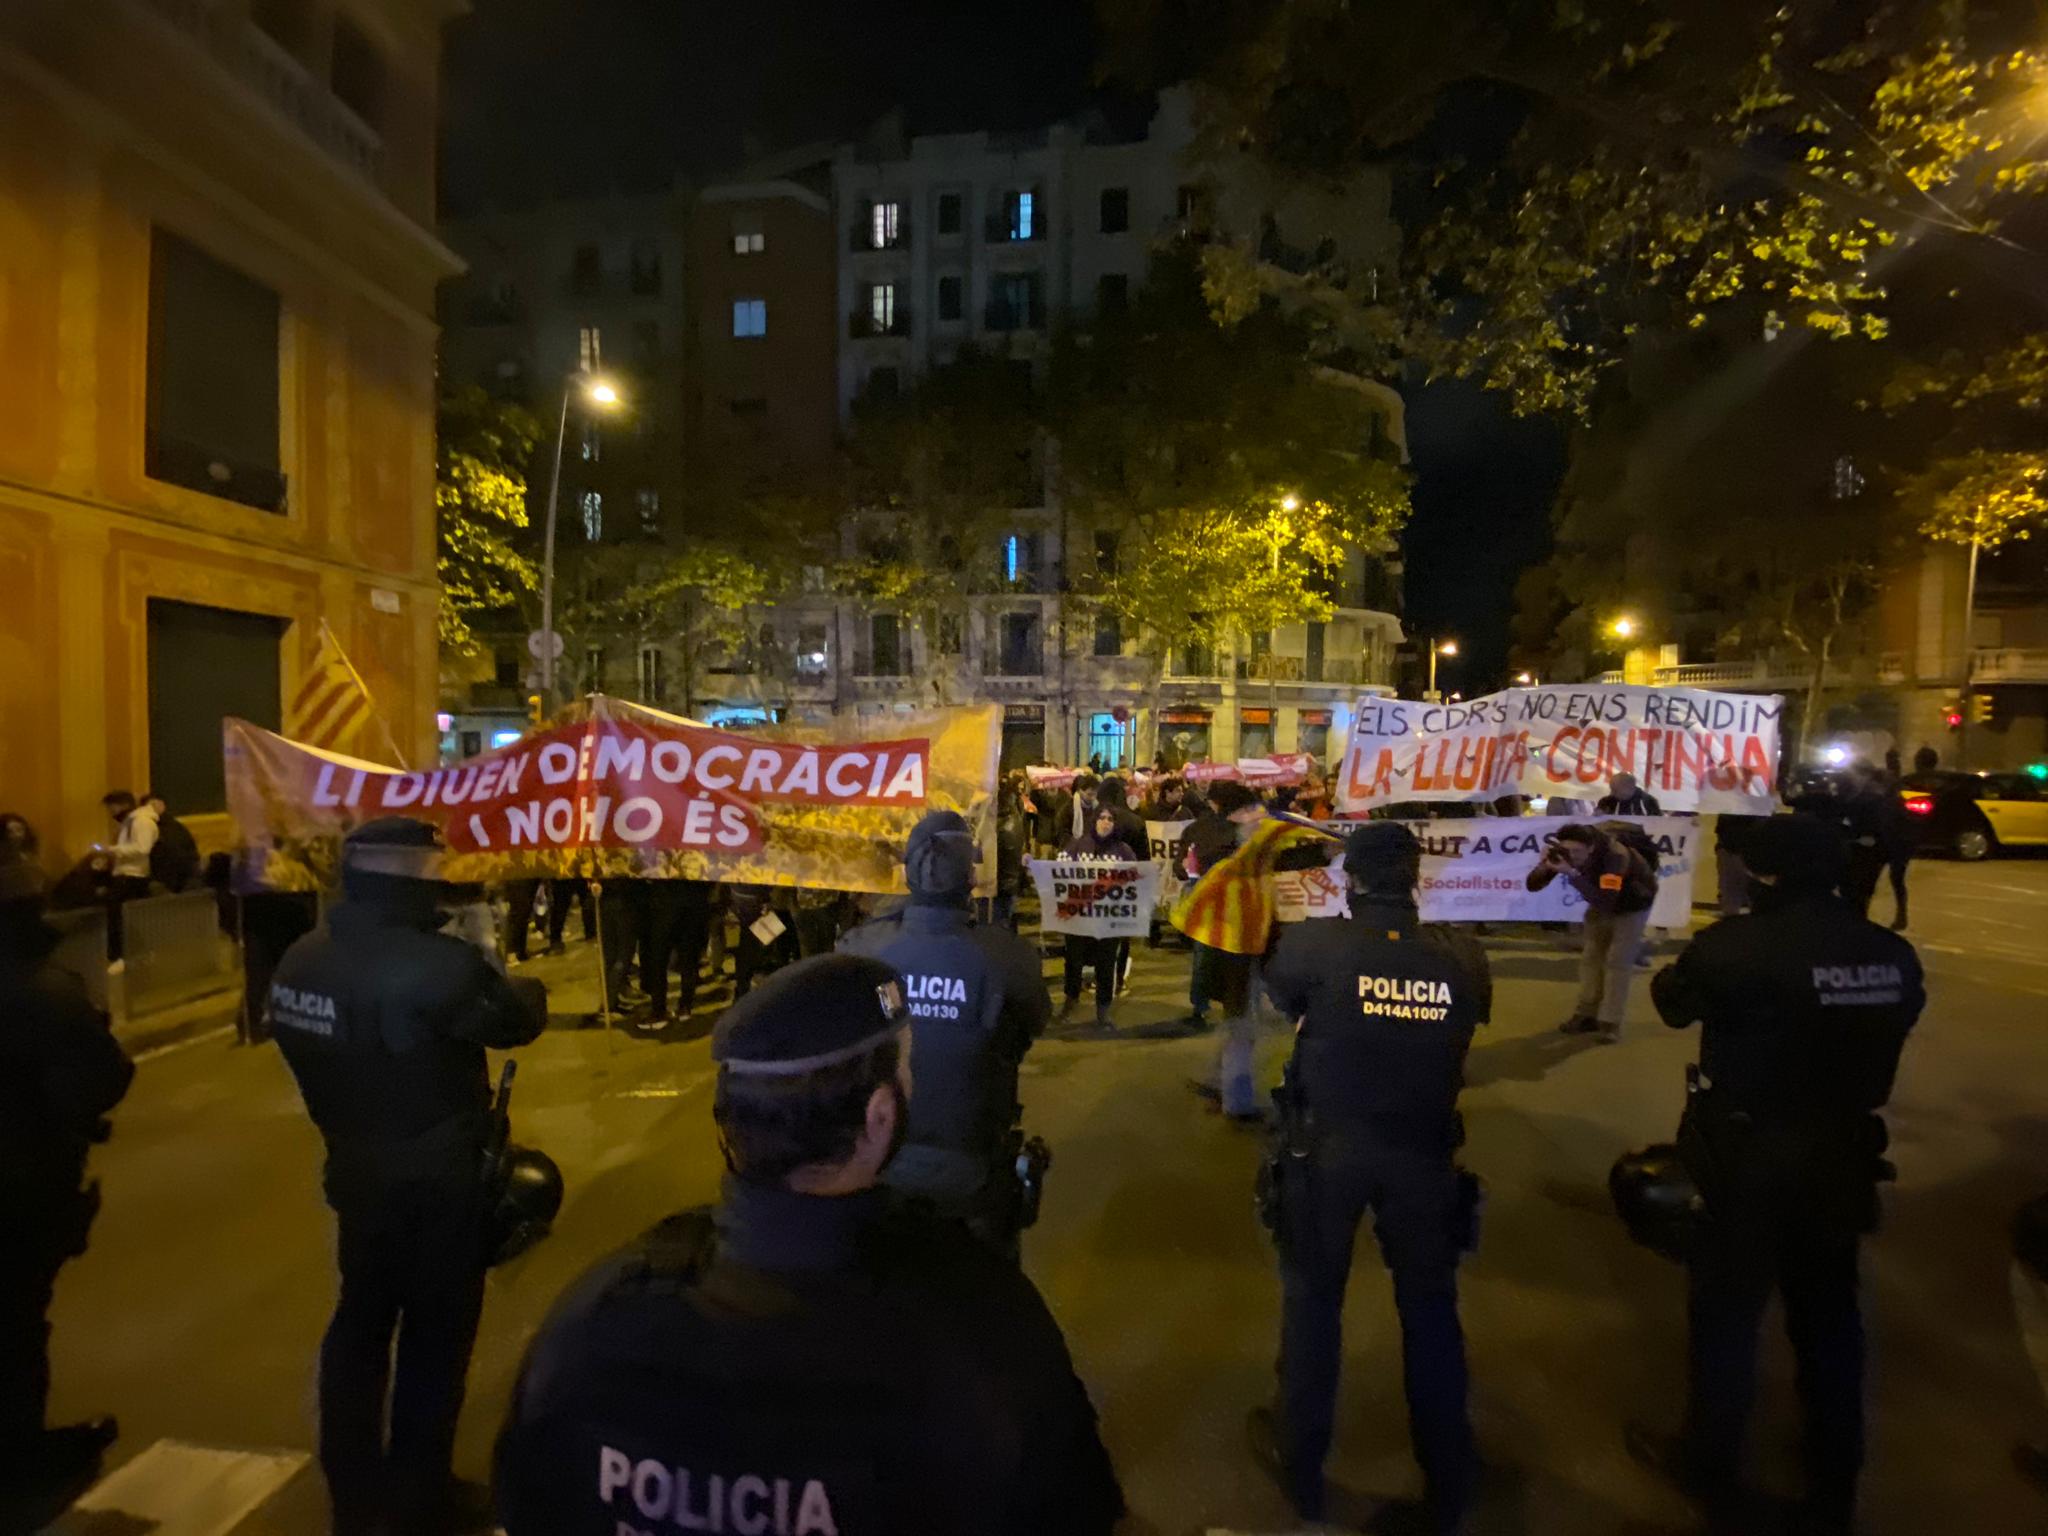 Els CDR es tornen a manifestar contra Sánchez a Barcelona